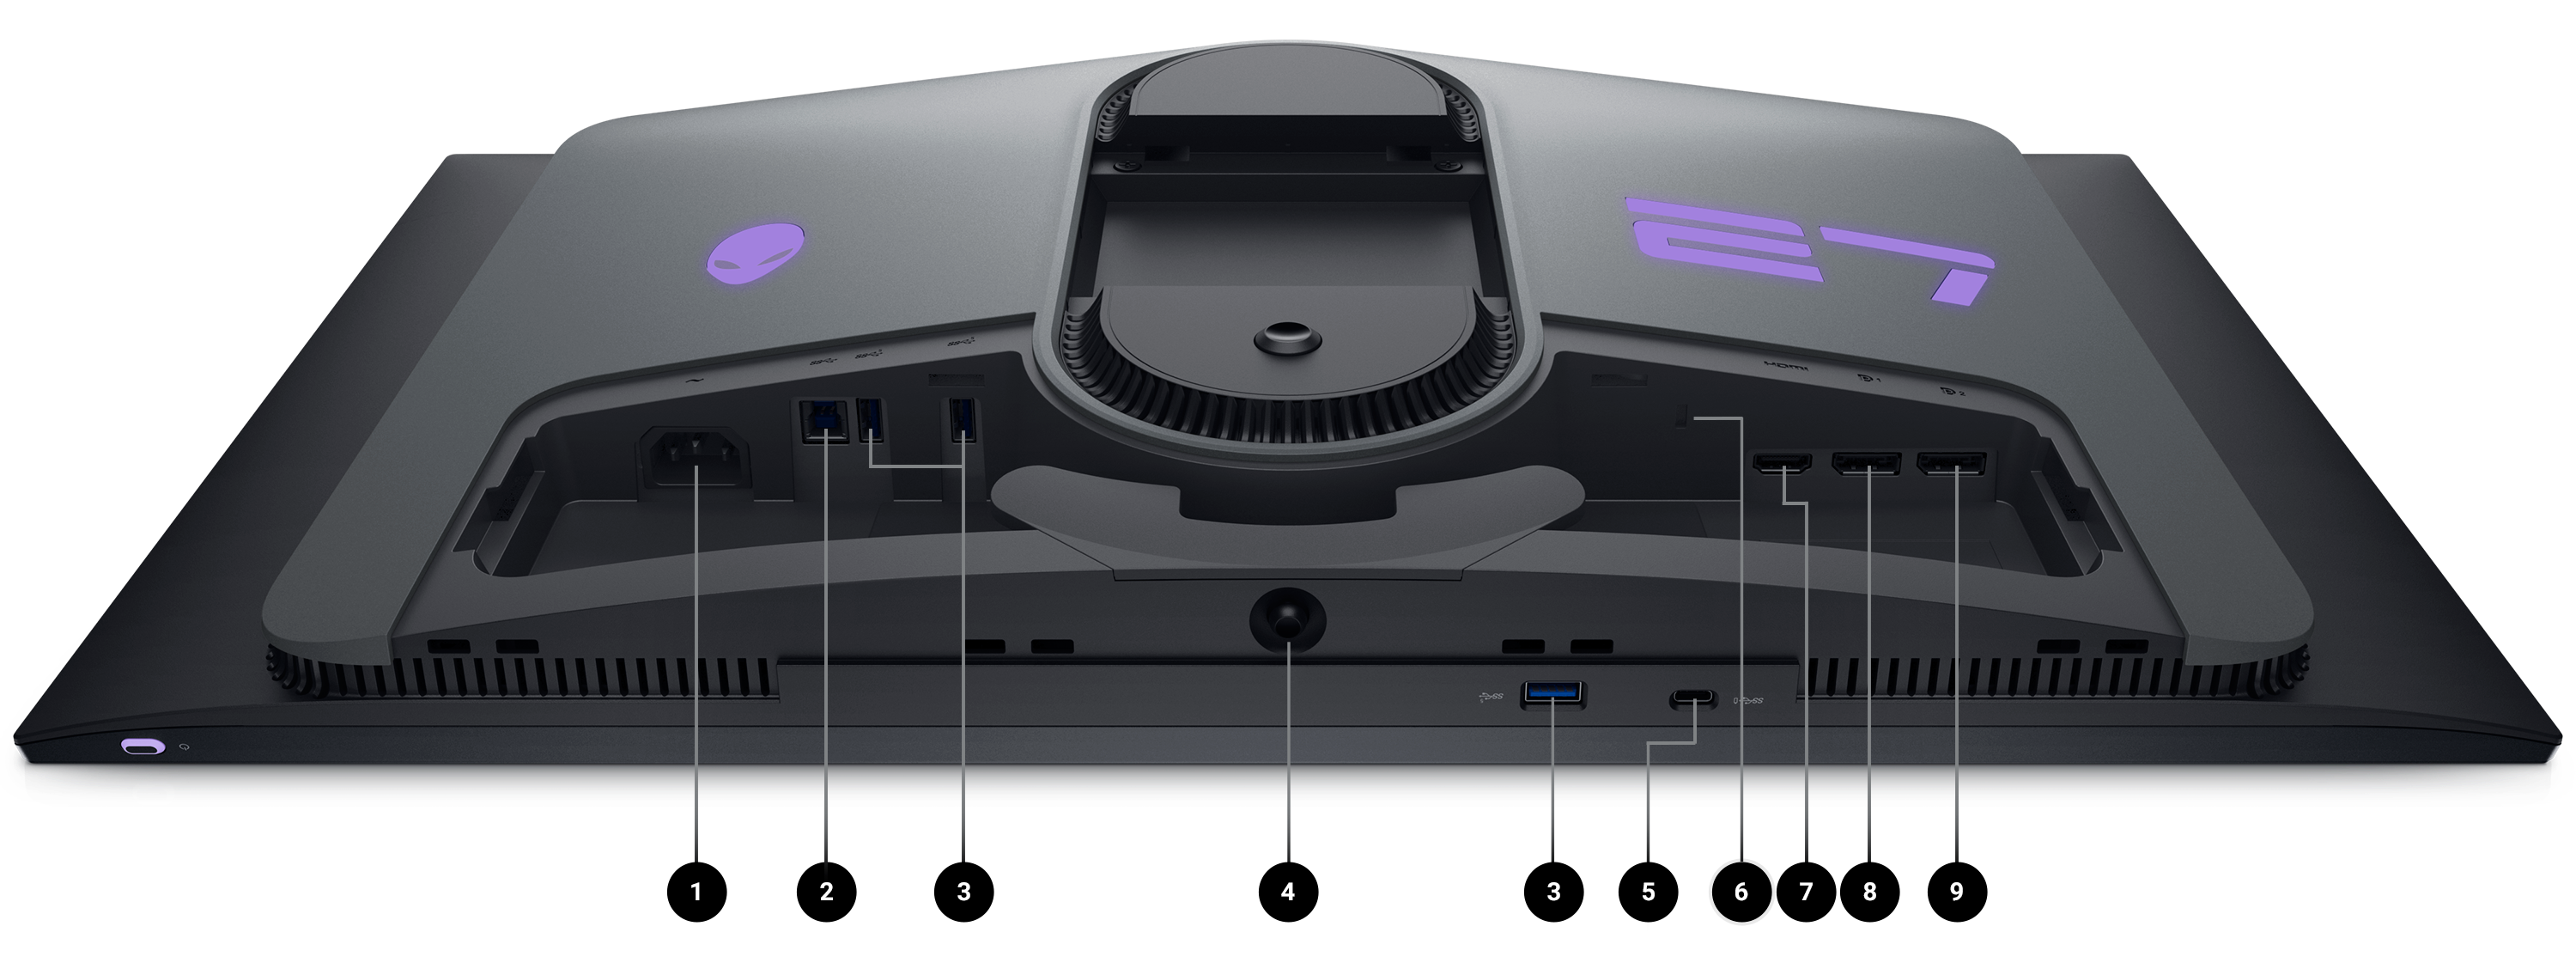 Monitor Gamer Dell AW2725DF com a tela voltada para baixo e os números de 1 a 9 indicando as opções de conectividade do produto.